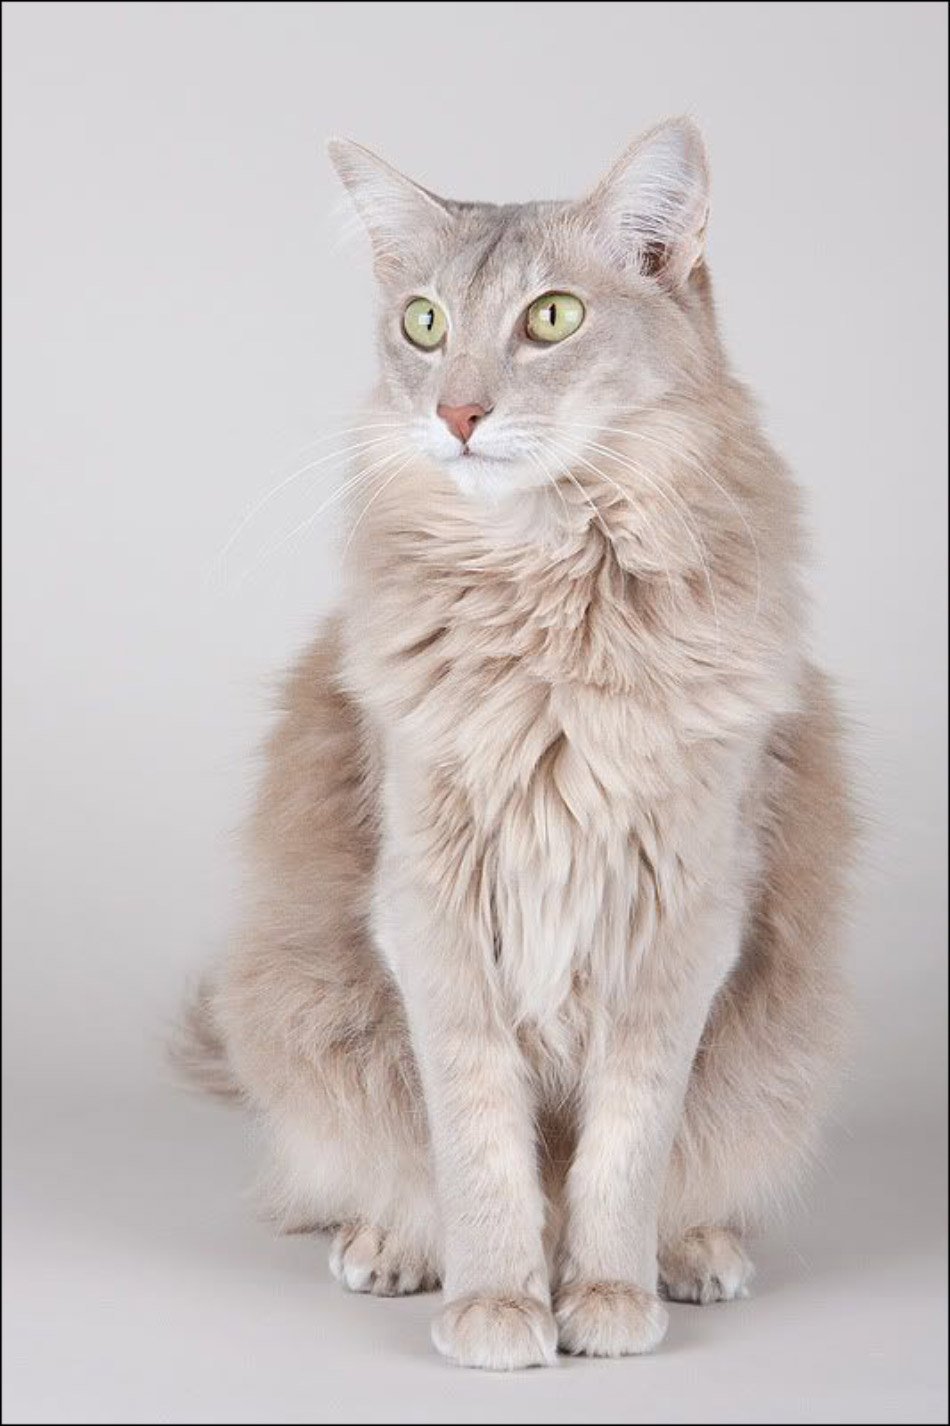 ФОТО: Ориентальная длинношерстная кошка 4